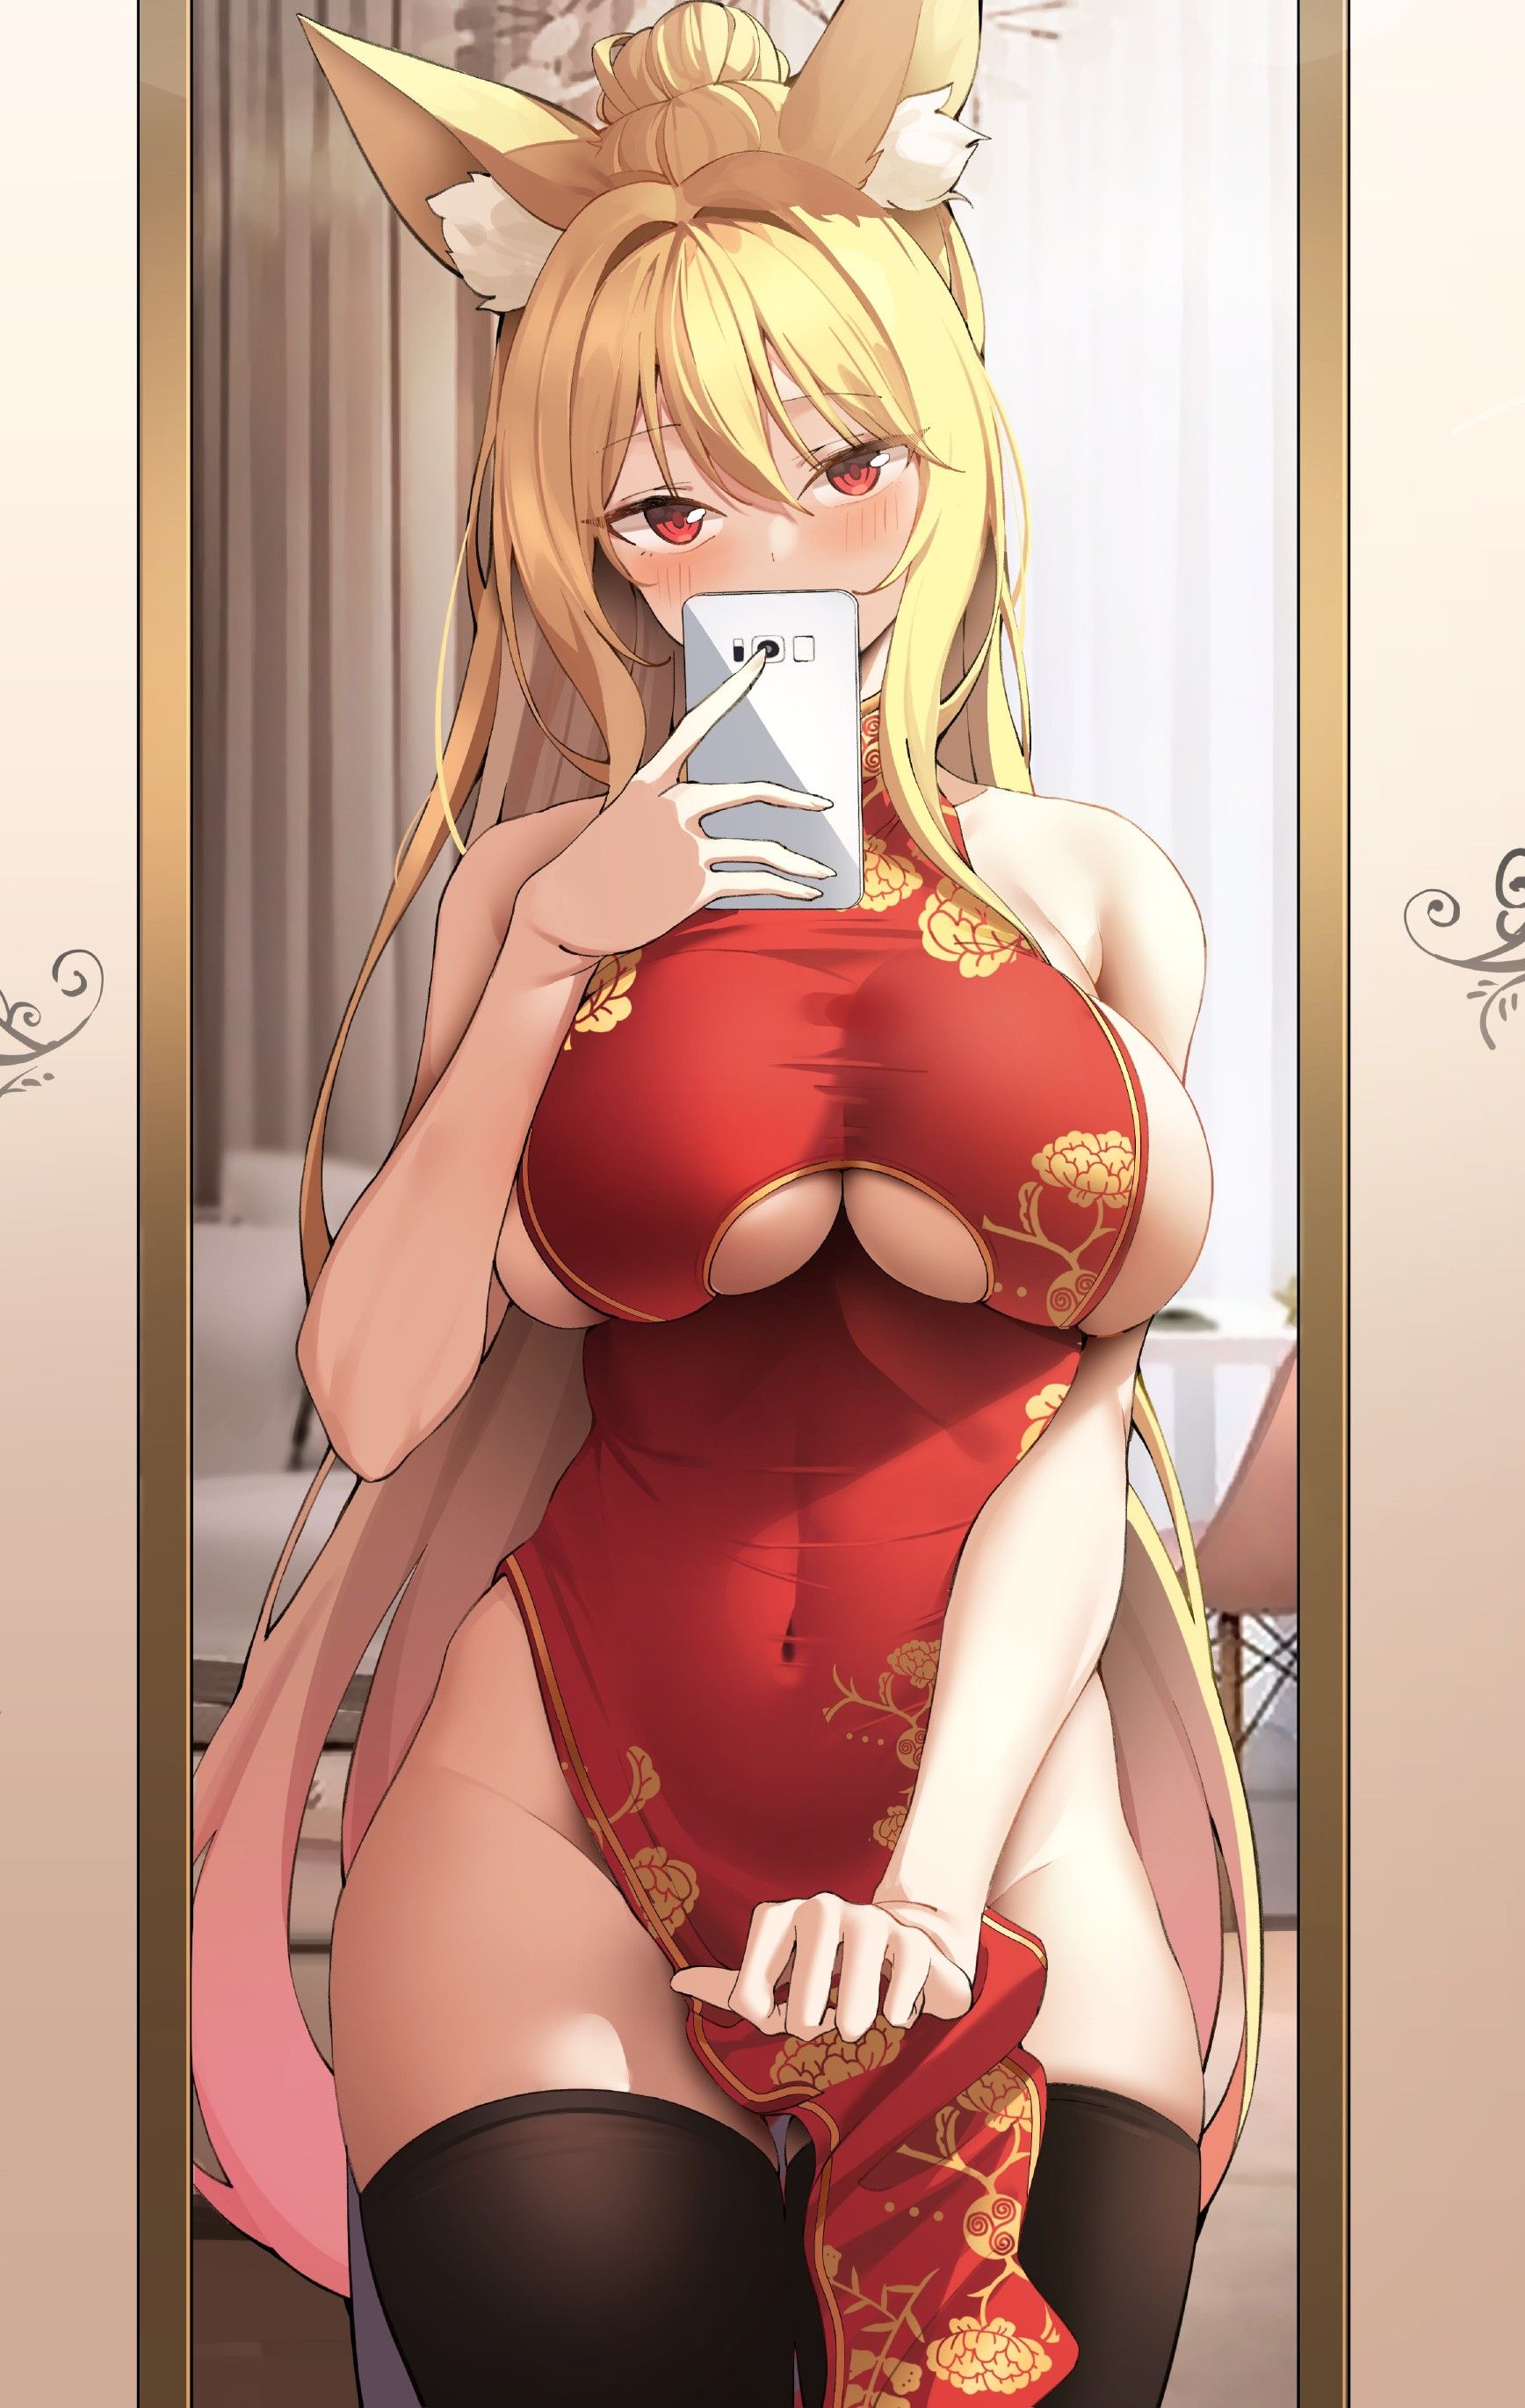 【2nd】 Erotic image of a girl with yoko milk puni Puni Part 50 12